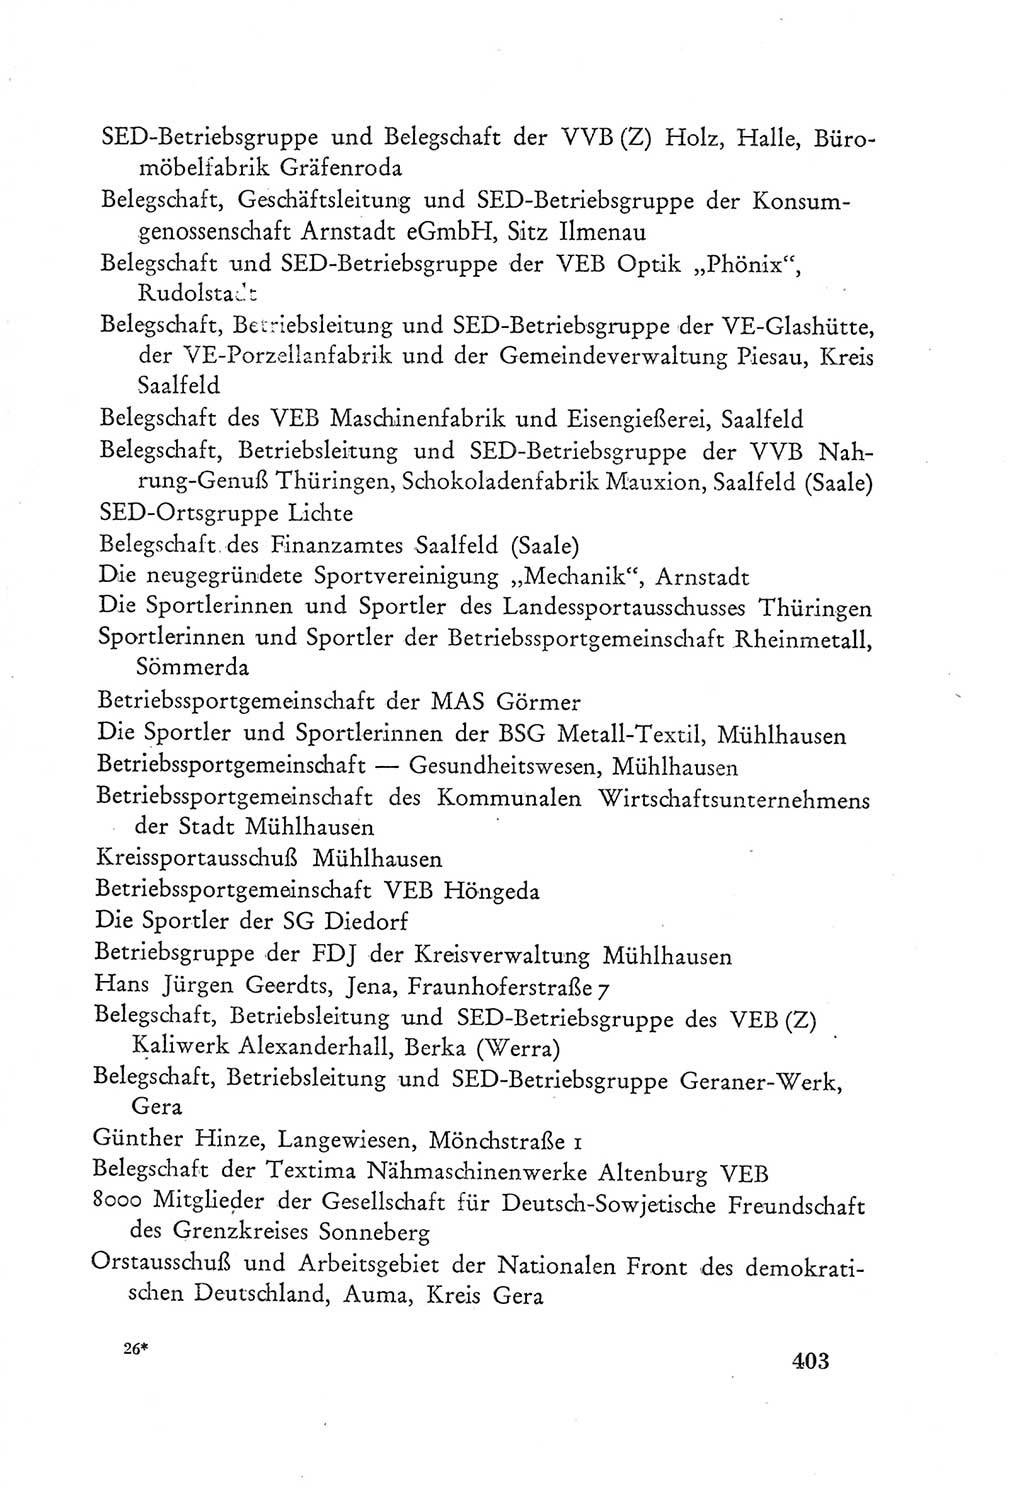 Protokoll der Verhandlungen des Ⅲ. Parteitages der Sozialistischen Einheitspartei Deutschlands (SED) [Deutsche Demokratische Republik (DDR)] 1950, Band 2, Seite 403 (Prot. Verh. Ⅲ. PT SED DDR 1950, Bd. 2, S. 403)